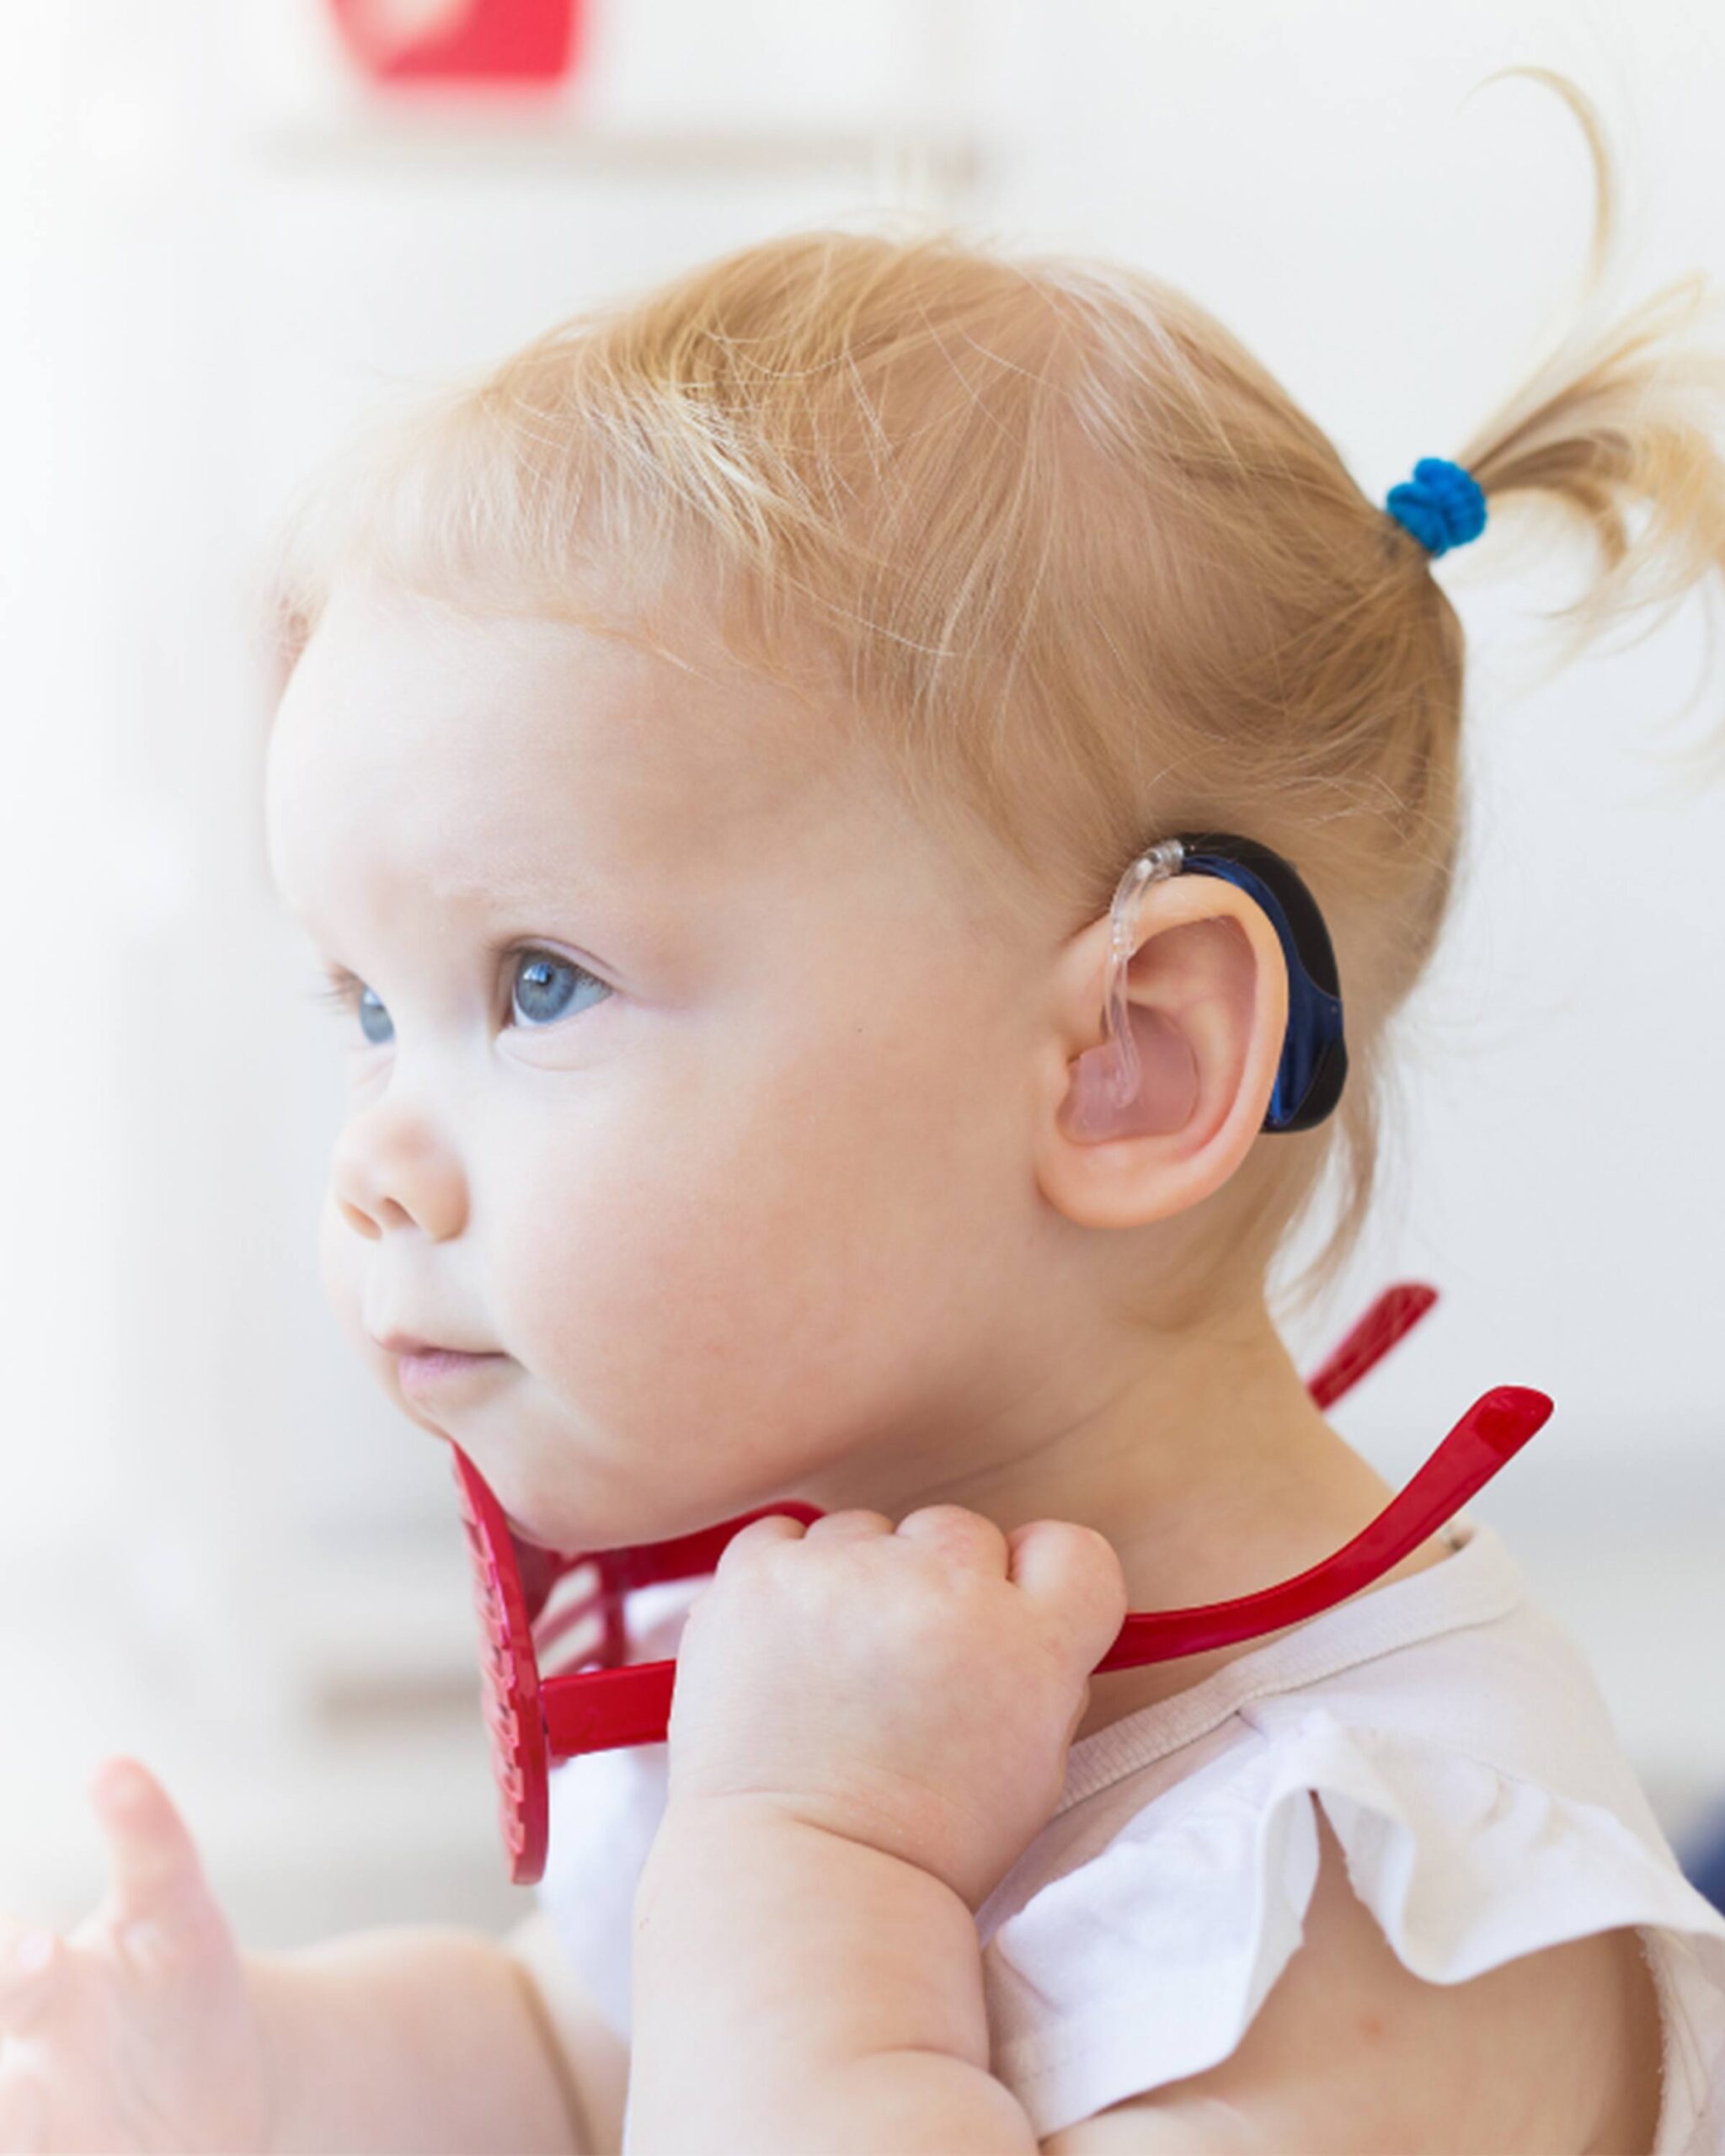 Programa IV Jornadas de Actualizacion Audiologica Pediatrica oirT (Documento (A4))